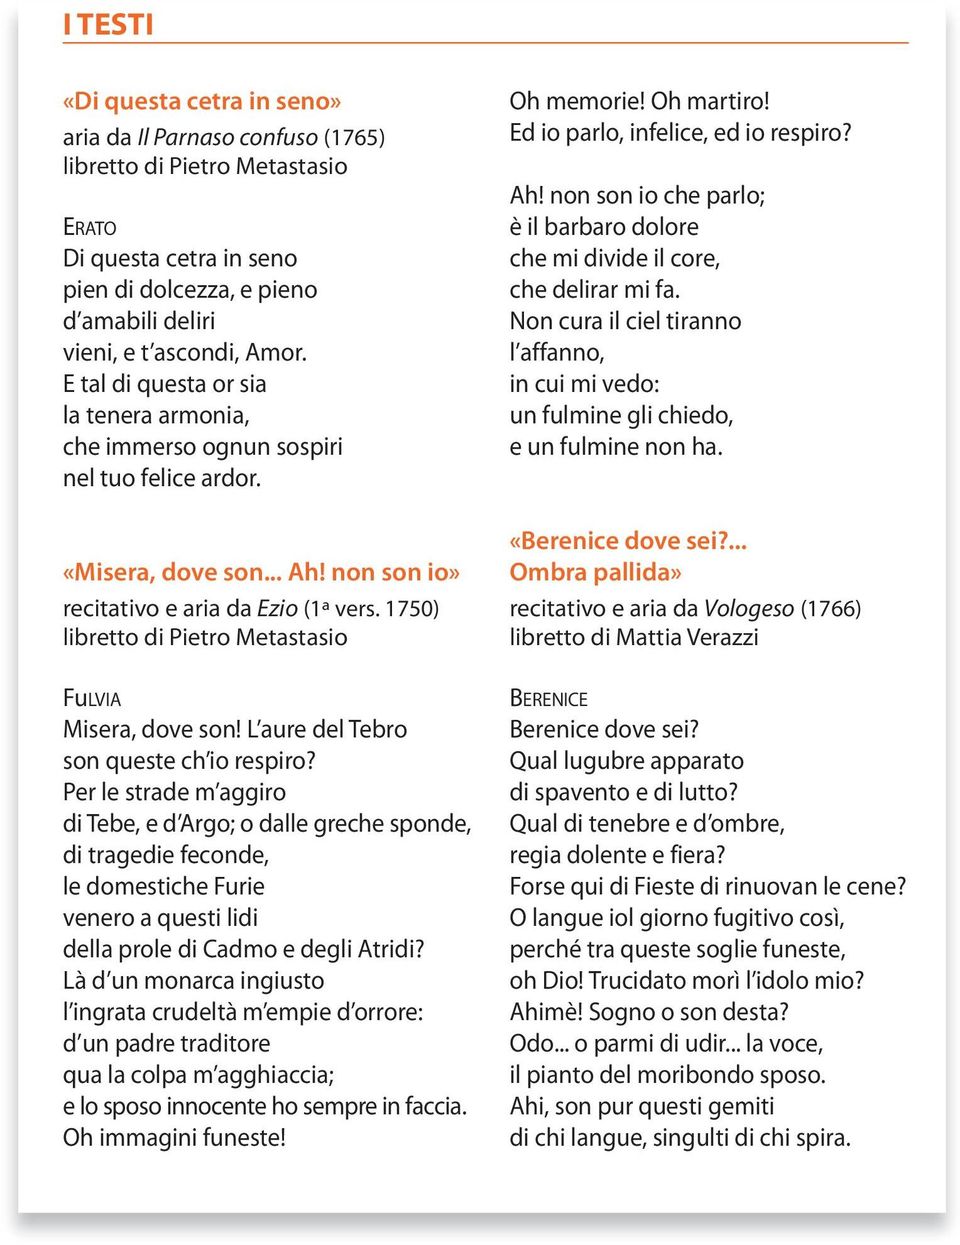 1750) libretto di Pietro Metastasio FuLVIA Misera, dove son! L aure del Tebro son queste ch io respiro?